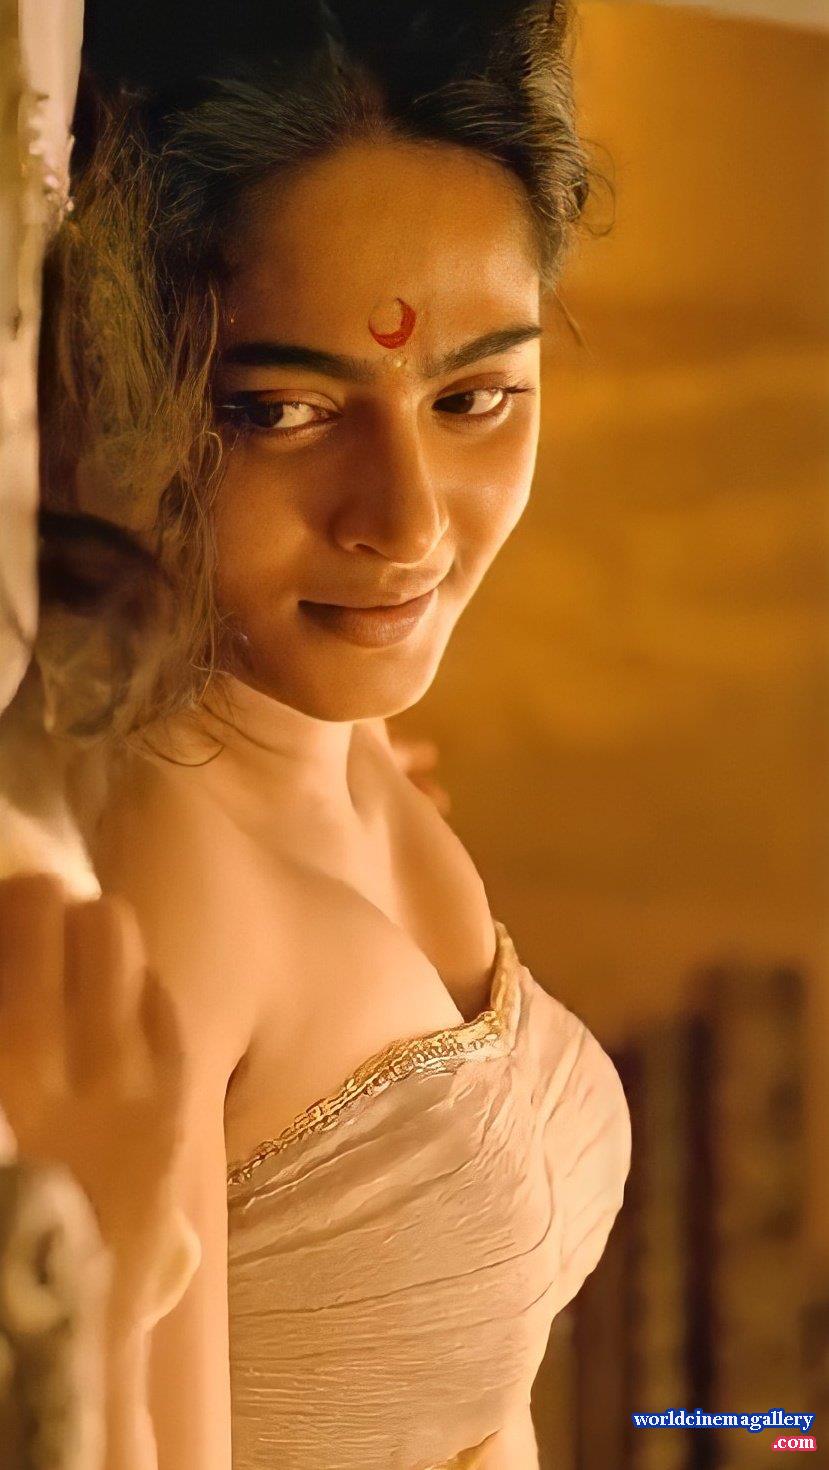 Tamil Actress 